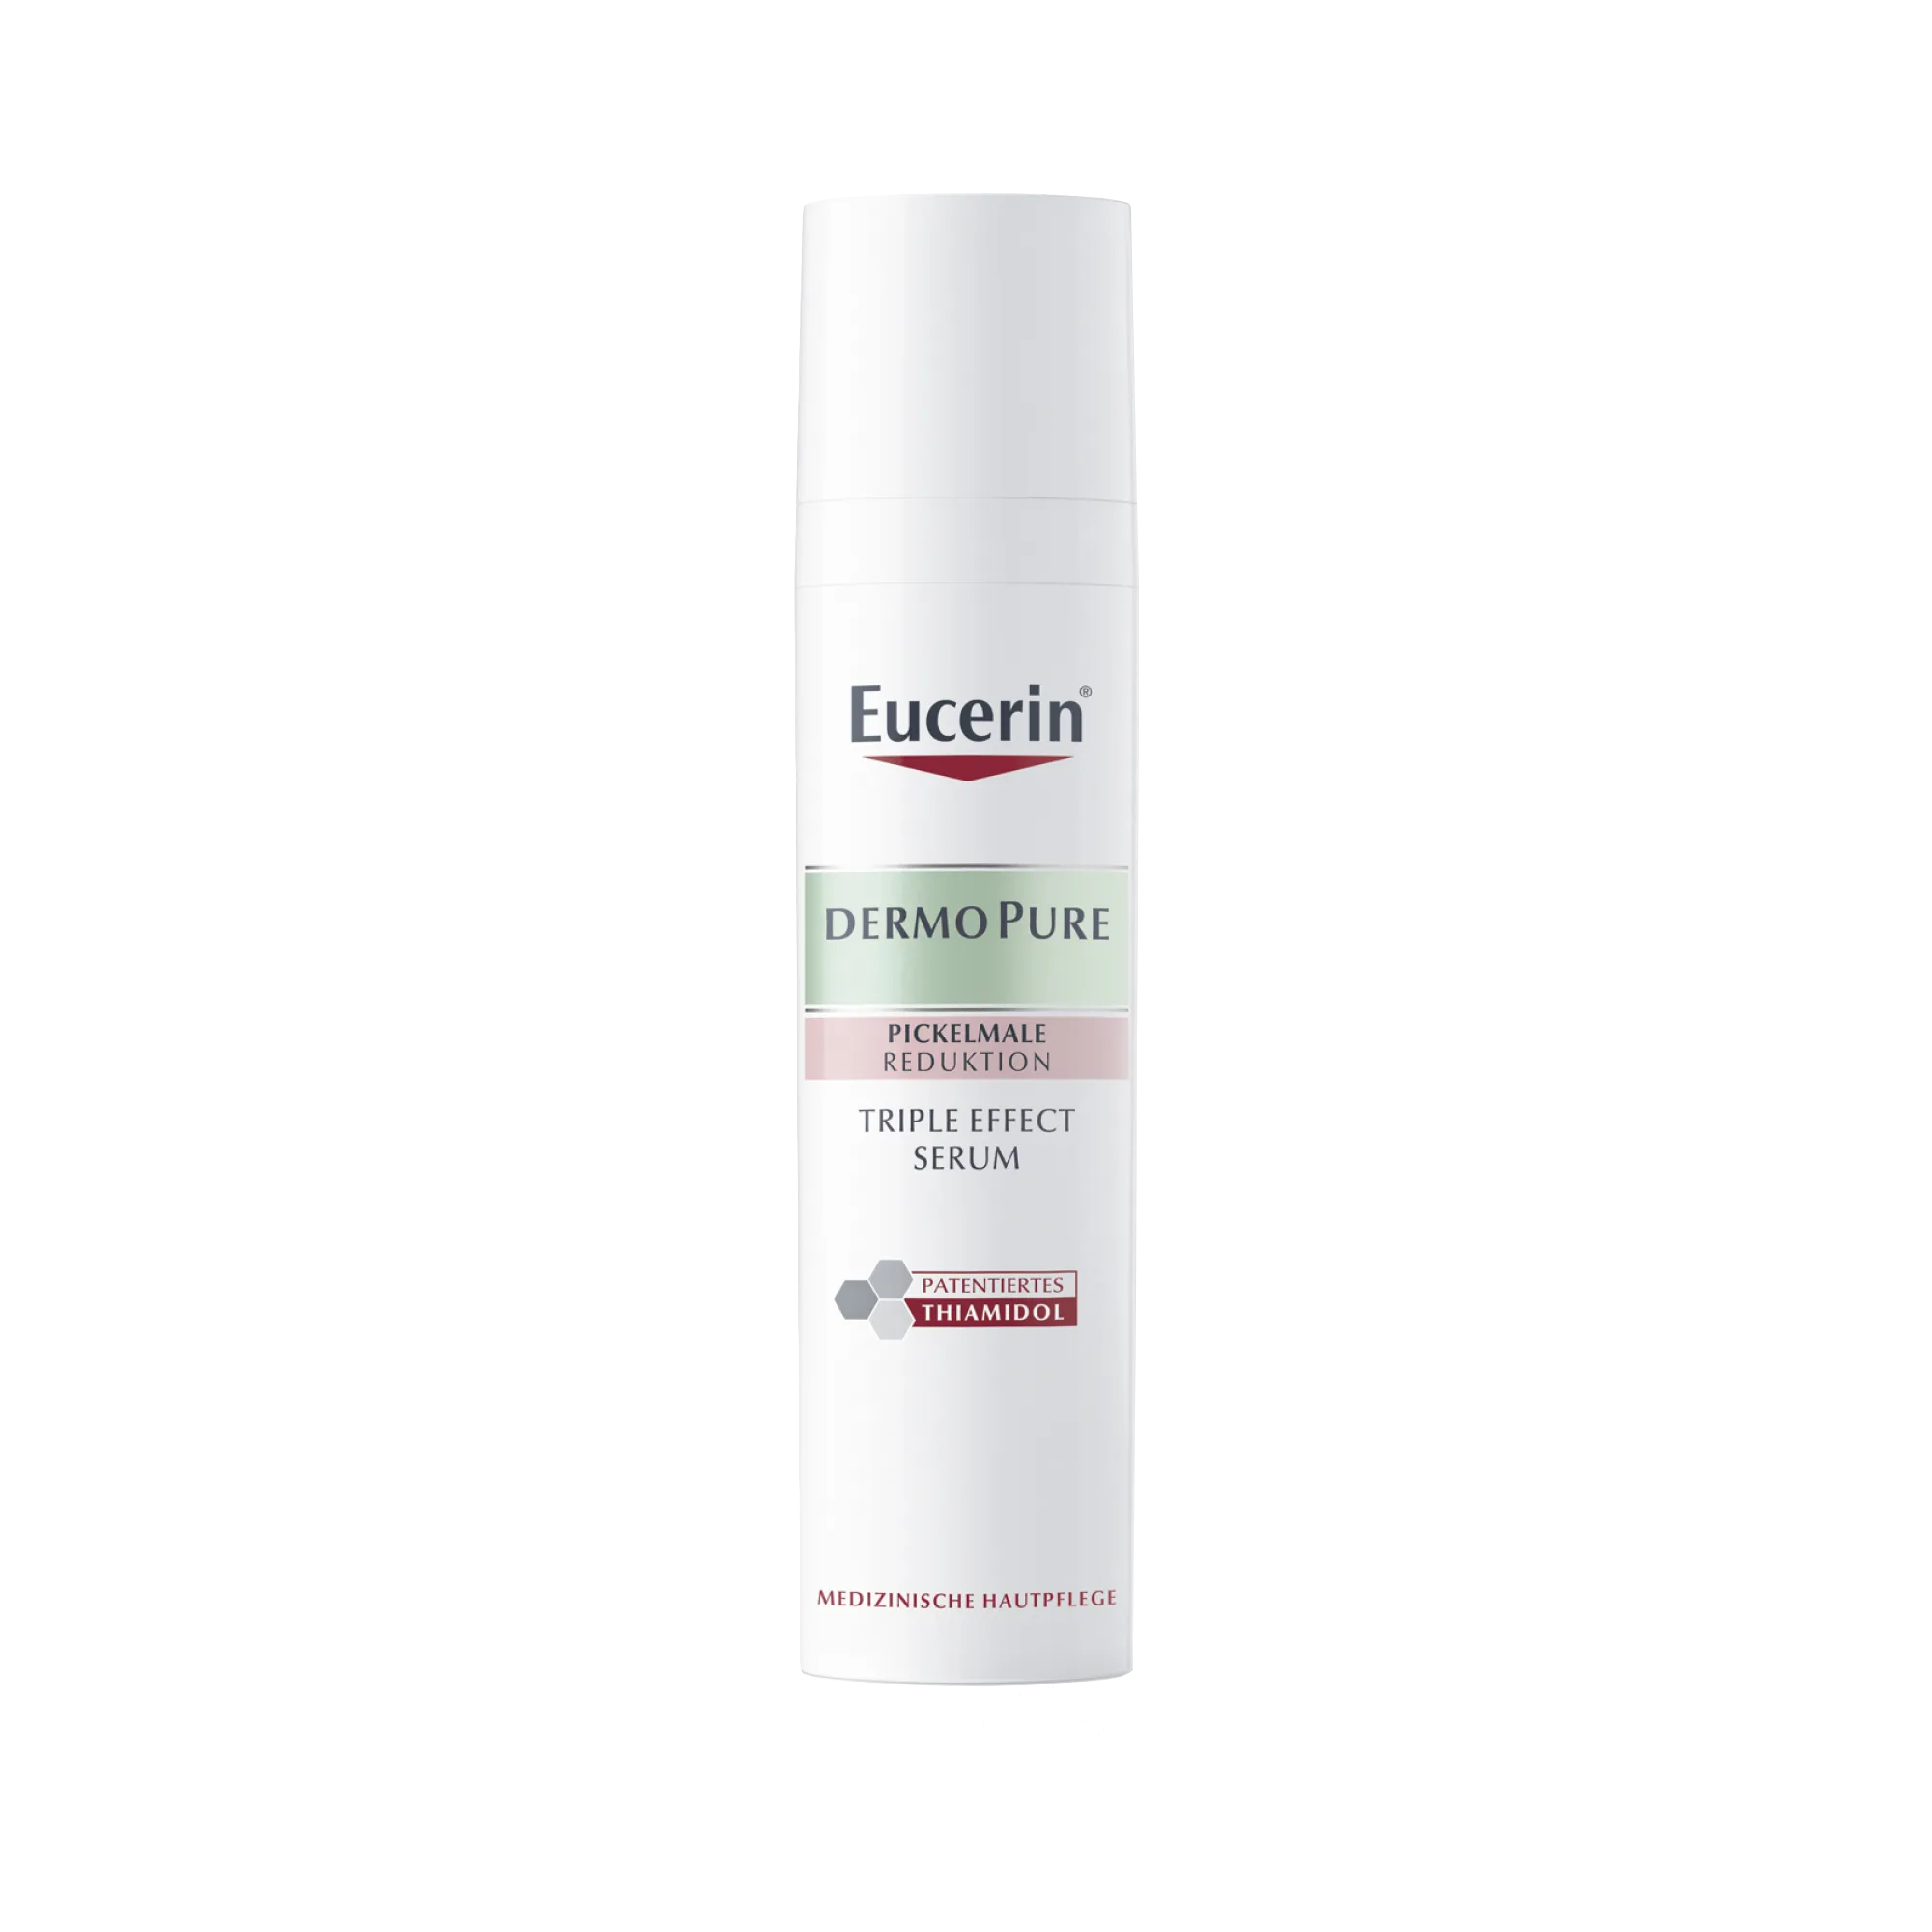 Eucerin DermoPure serum o potrójnym działaniu z Thiamidolem do skóry ze skłonnością do trądziku, 40 ml 